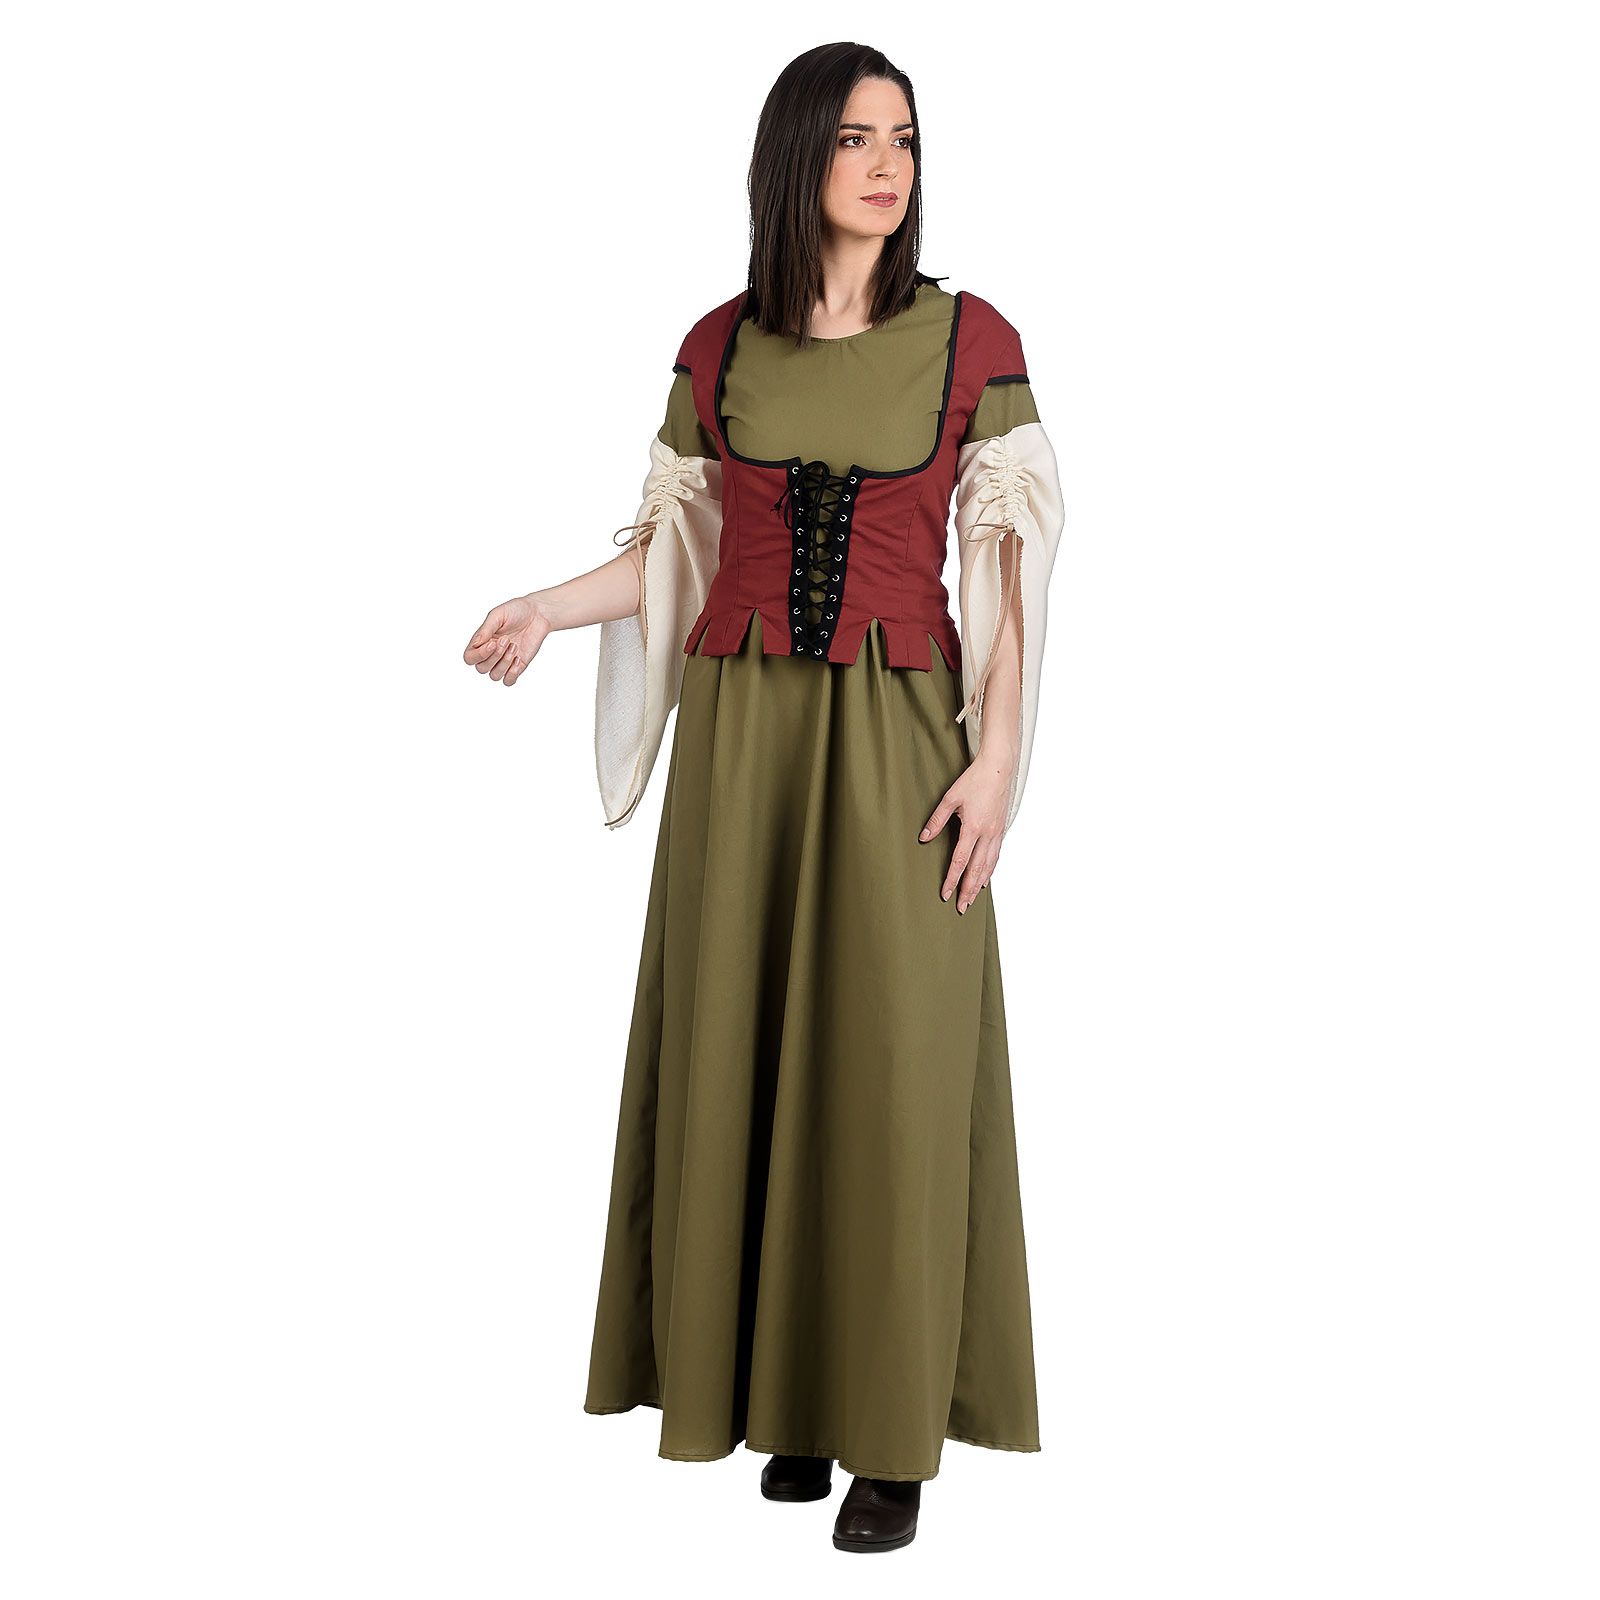 Mittelalter Maid Kostüm Damen